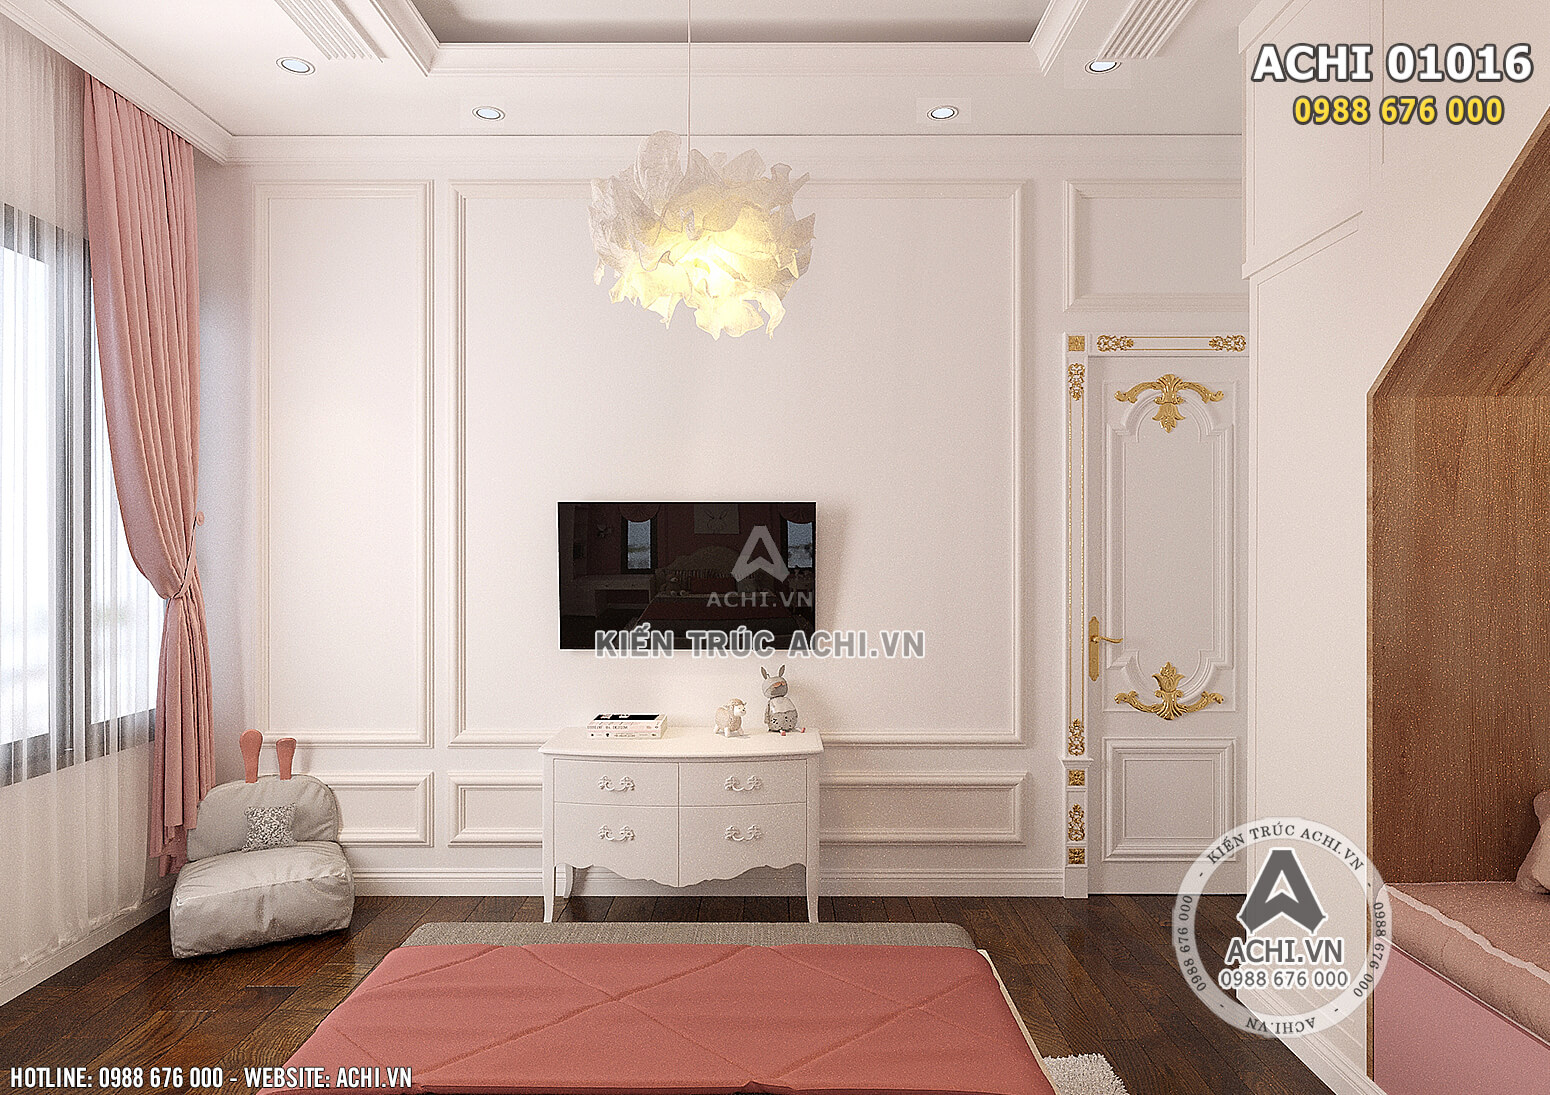 Hình ảnh: Thiết kế nội thất tân cổ điển cho không gian phòng ngủ cho cô con gái - ACHI 01016